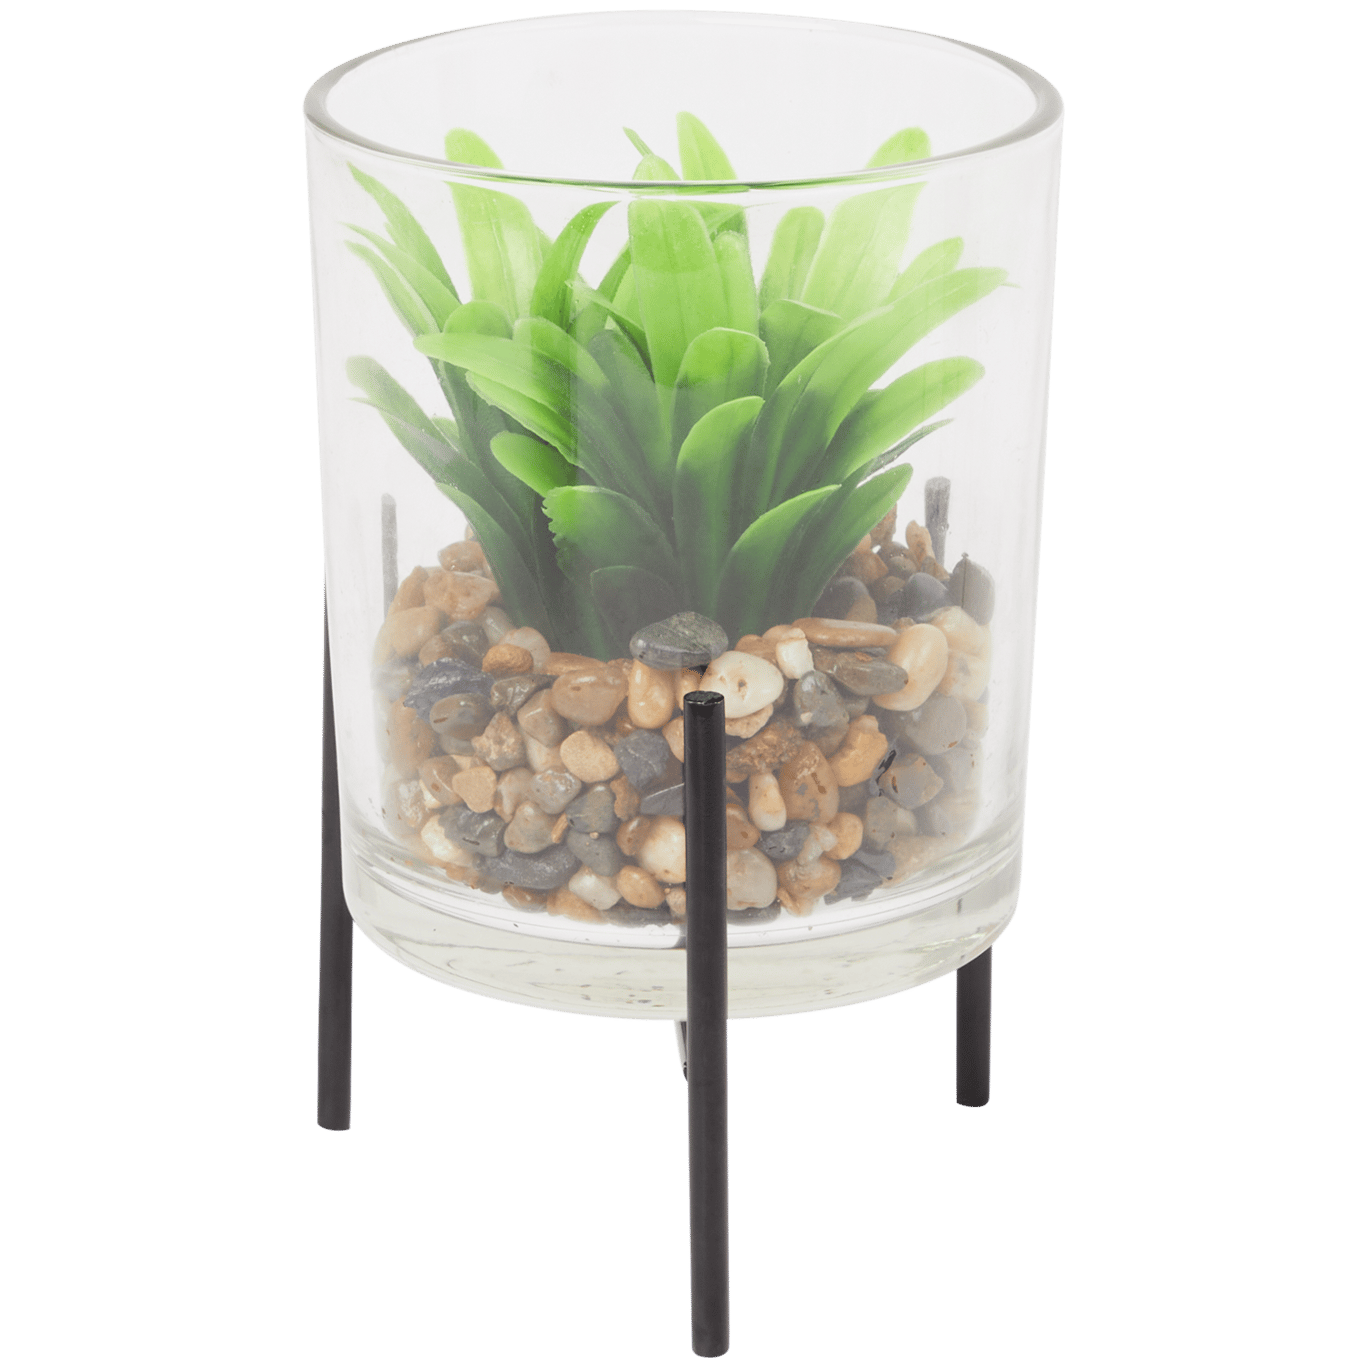 Plante grasse dans un vase